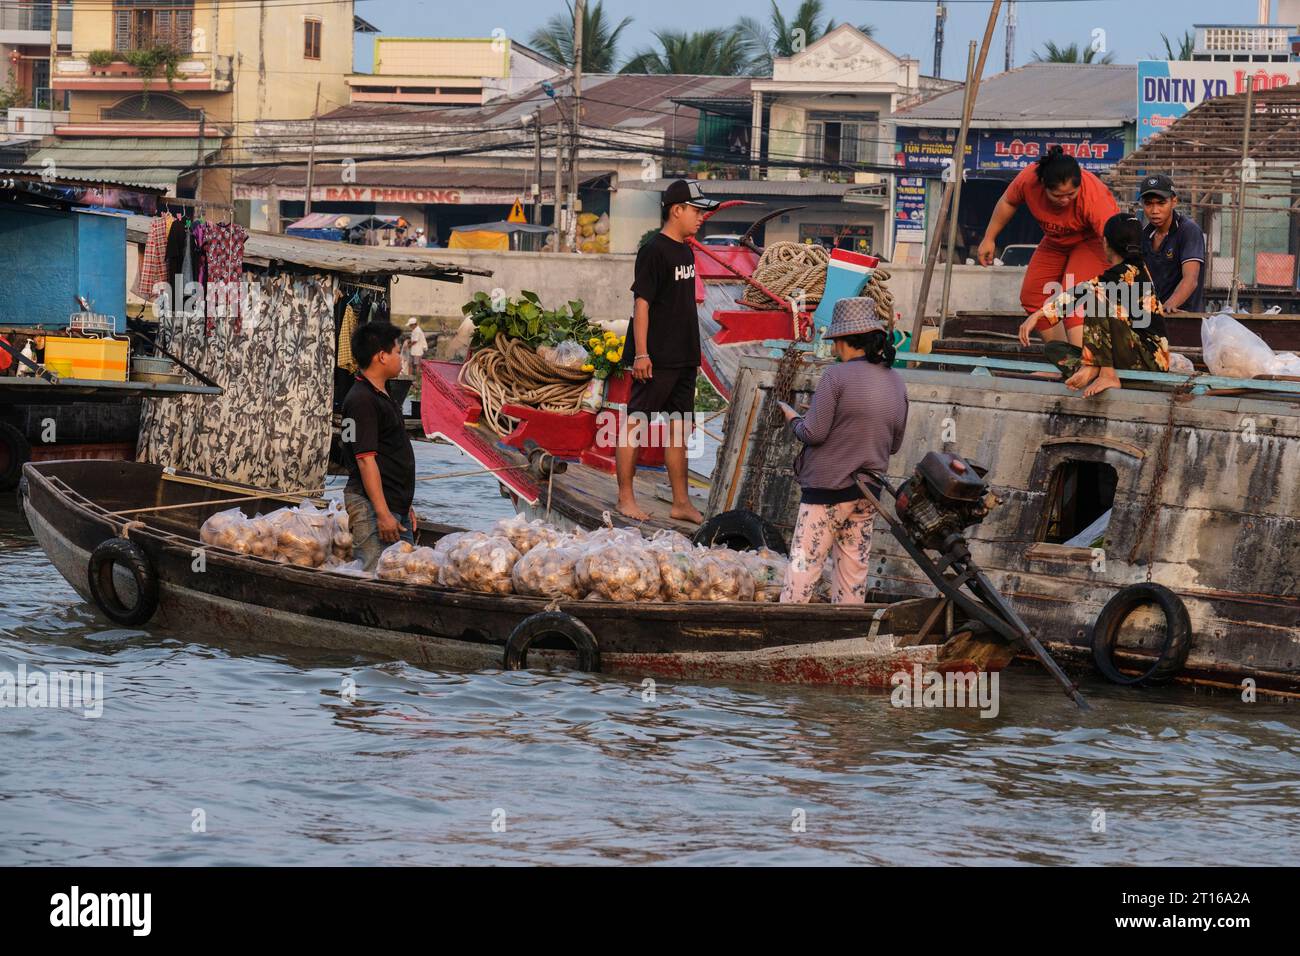 Scène du marché flottant de Phong Dien, près de CAN Tho, Vietnam. Bateau chargé de produits. Banque D'Images